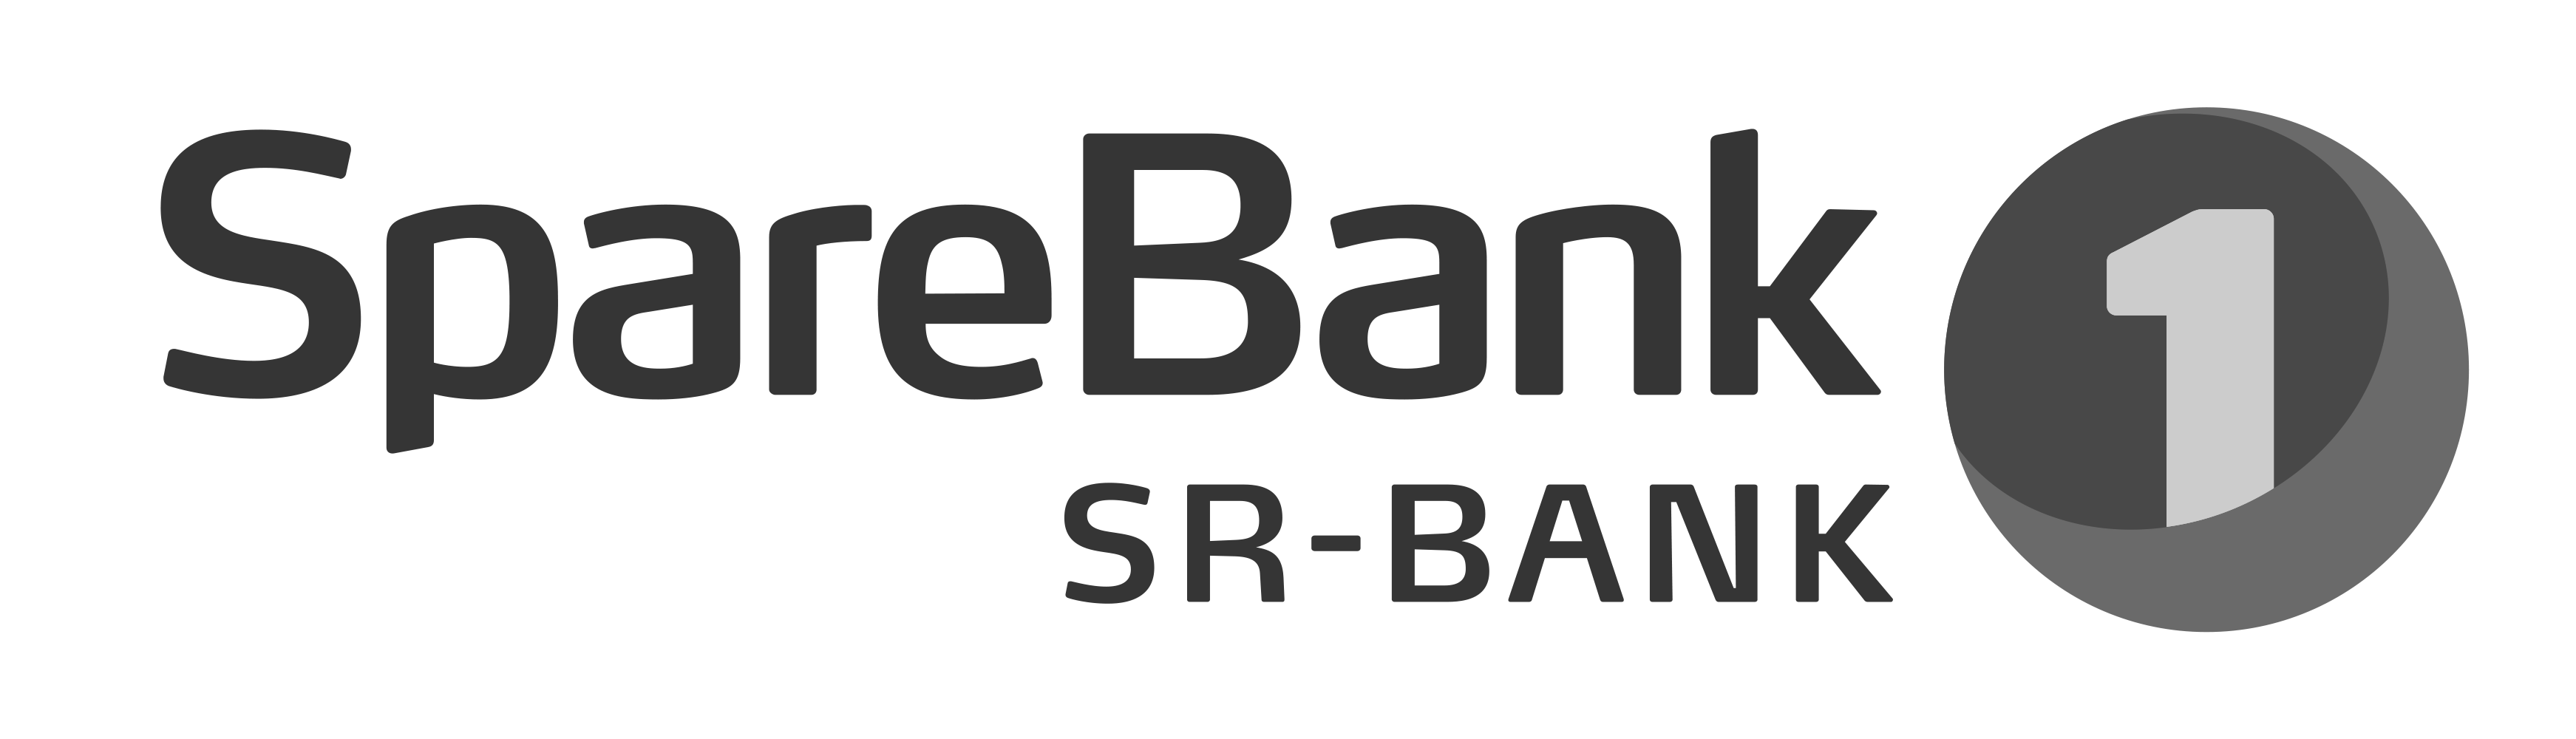 SR bank logo